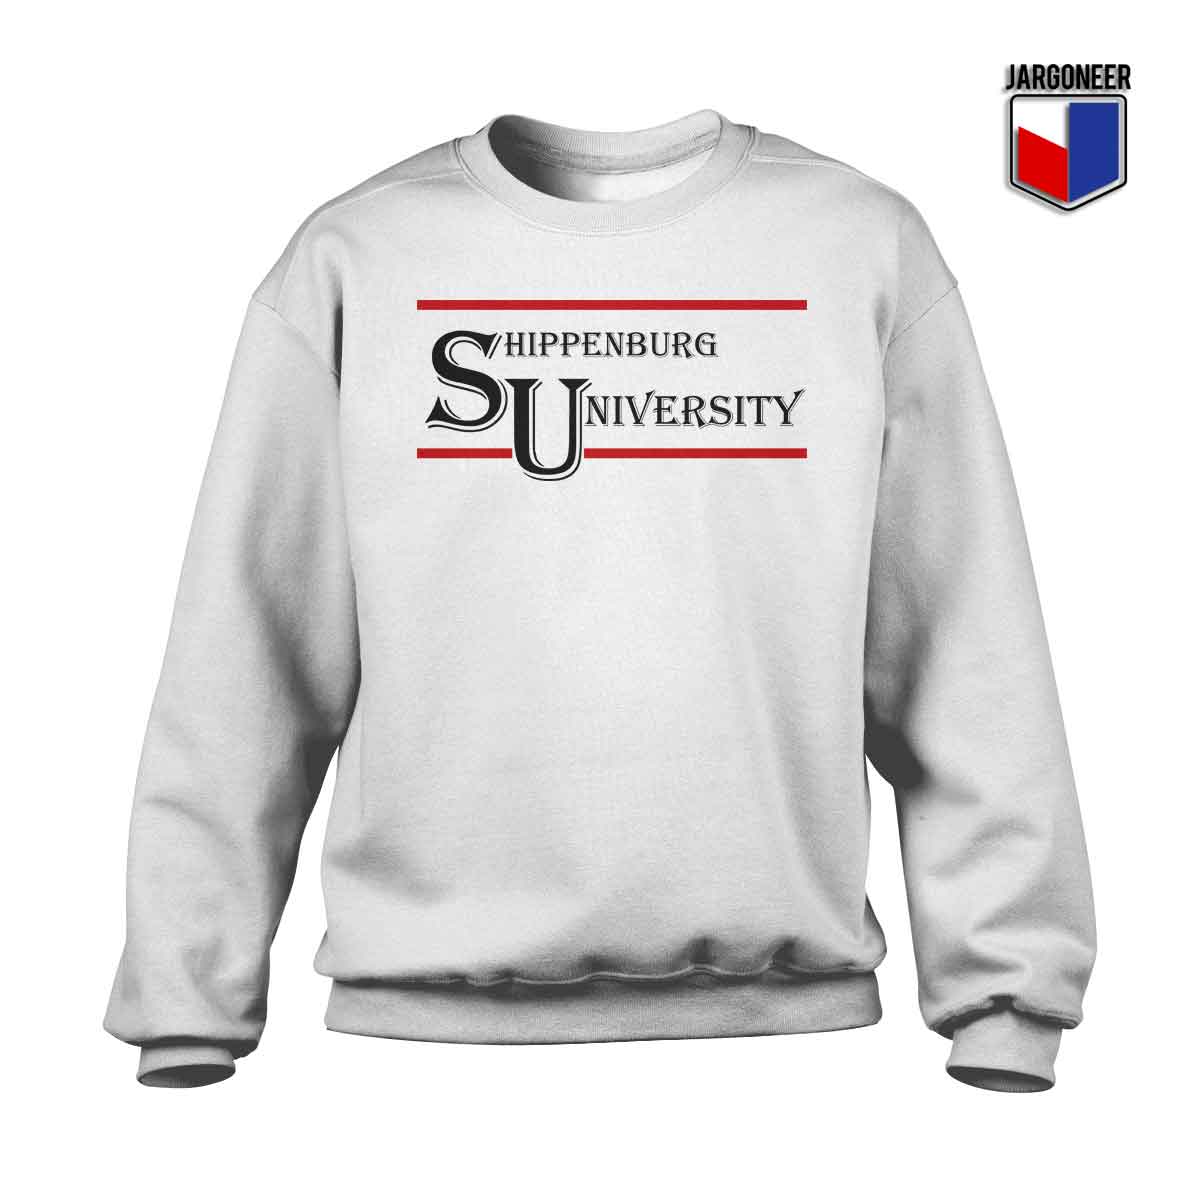 Shippenburg University 1 - Shop Unique Graphic Cool Shirt Designs